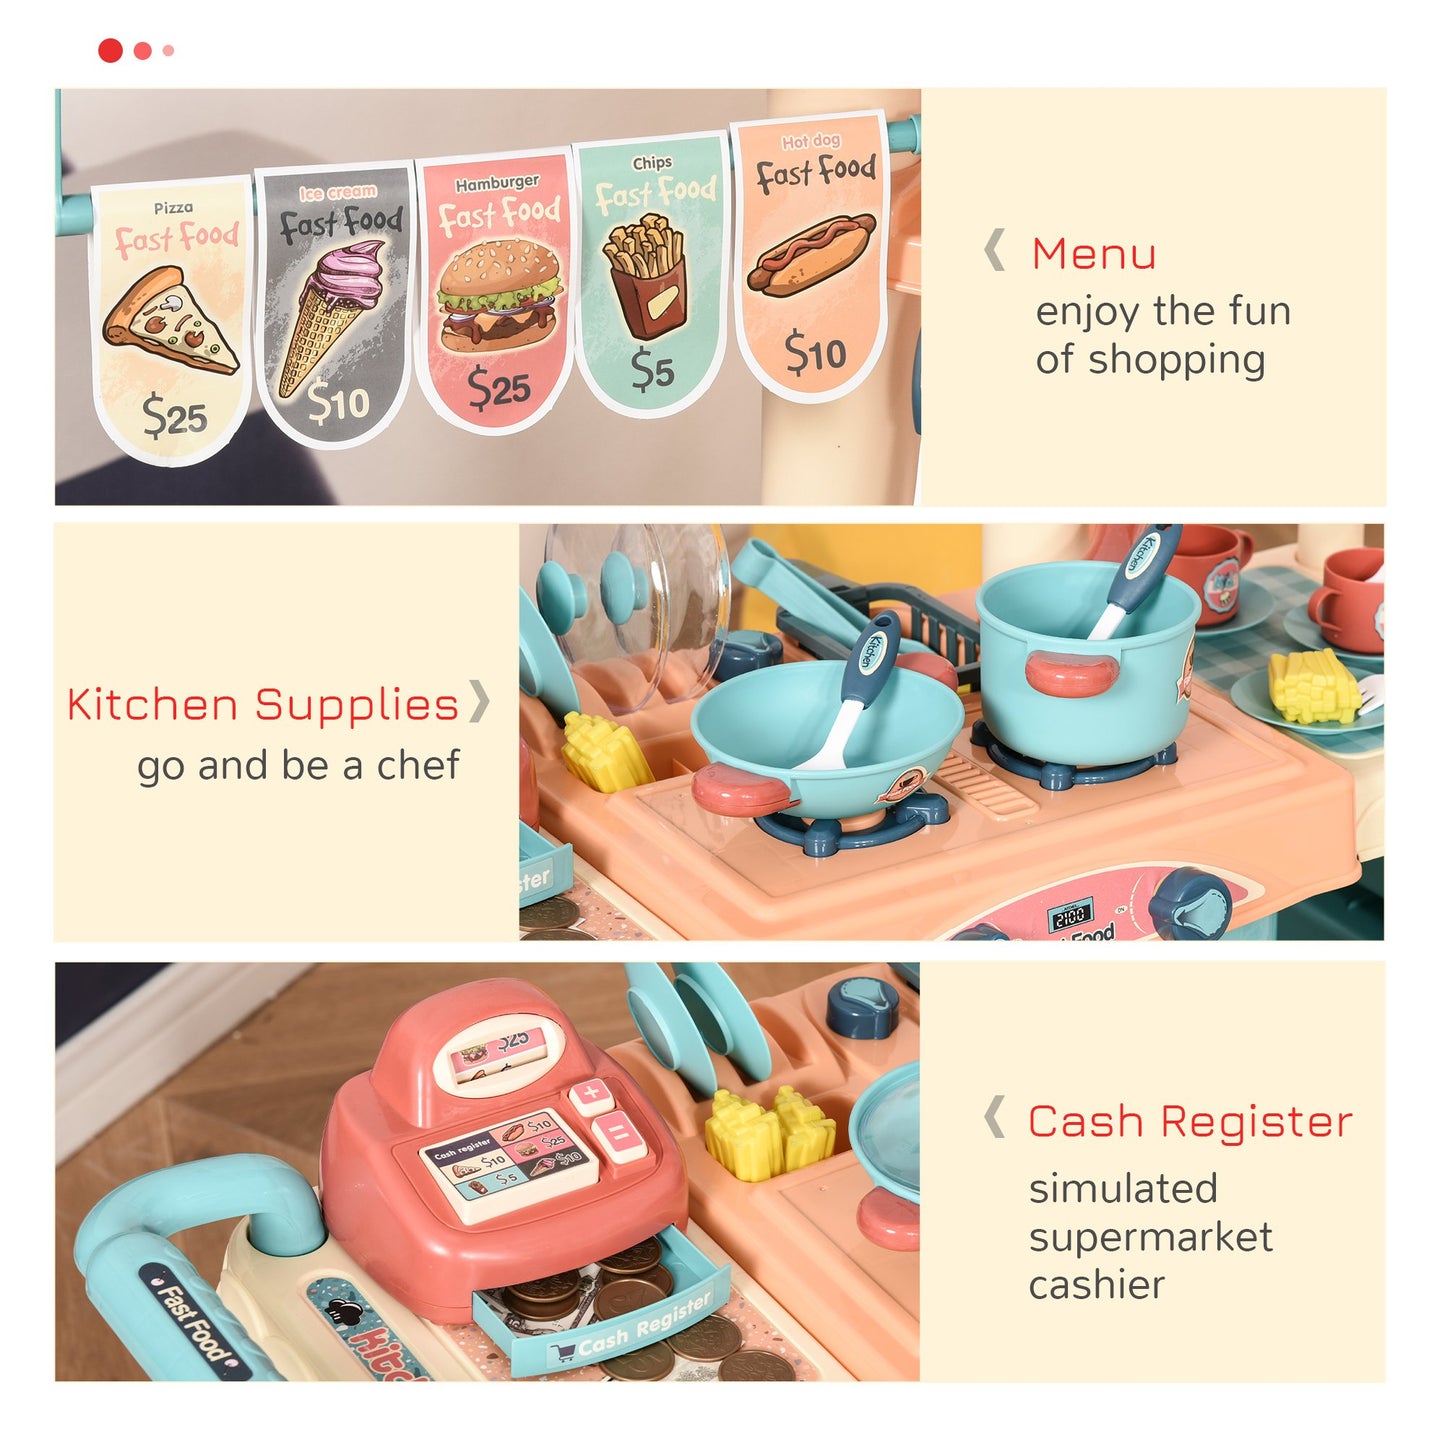 HOMCOM Kids Food Cart Pretend Playset Kitchen Supermarket Trolley Set w/ Accessories